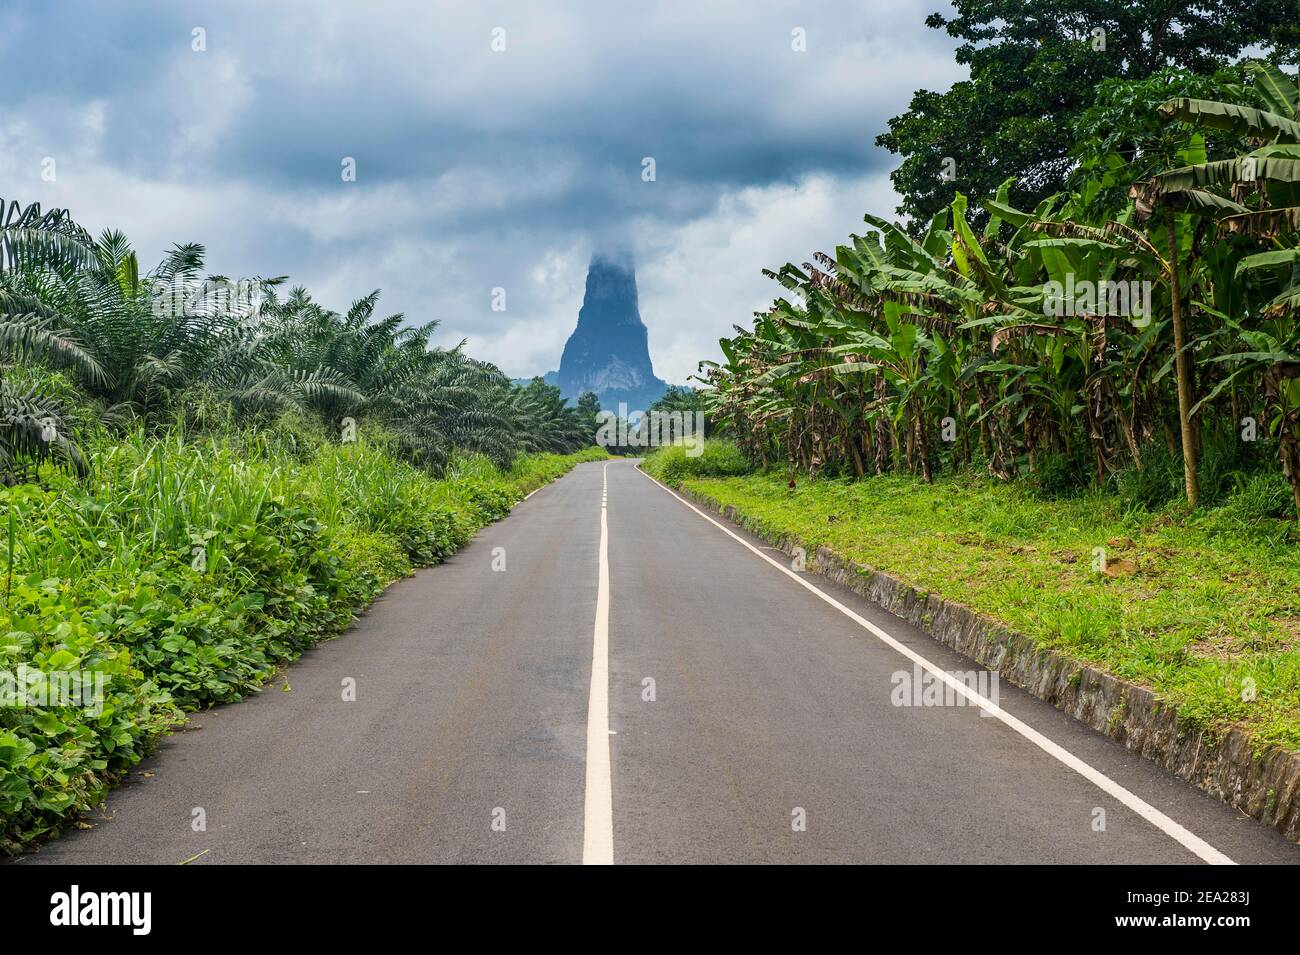 Straße, die zum ungewöhnlichen Monolith führt, Pico Cao Grande, Ostküste von Sao Tome, Sao Tome und Principe, Atlantischer Ozean Stockfoto